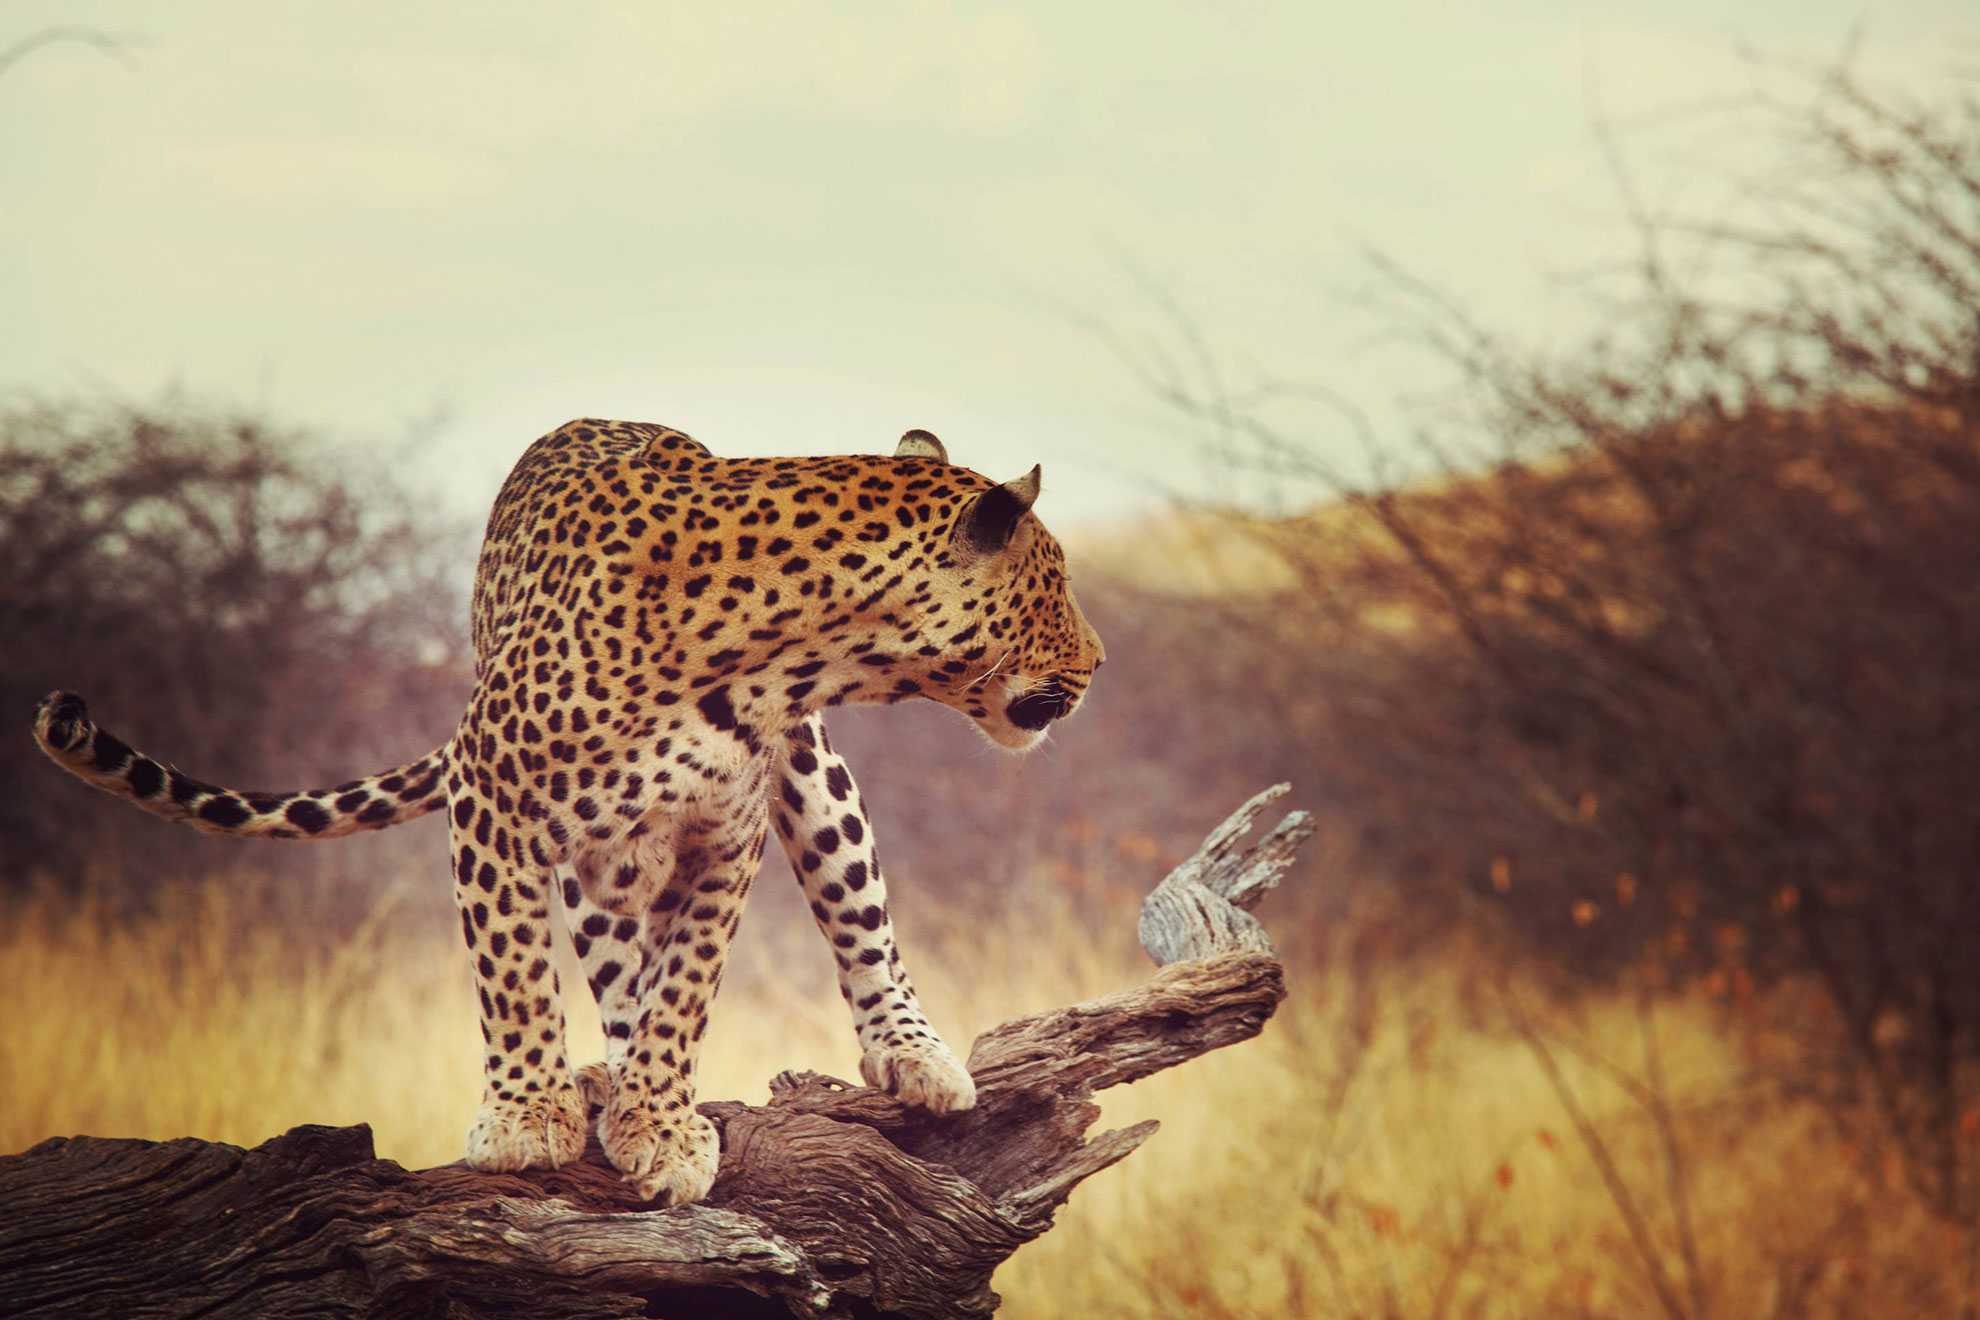 Leopard in Erongo region, in Namibia